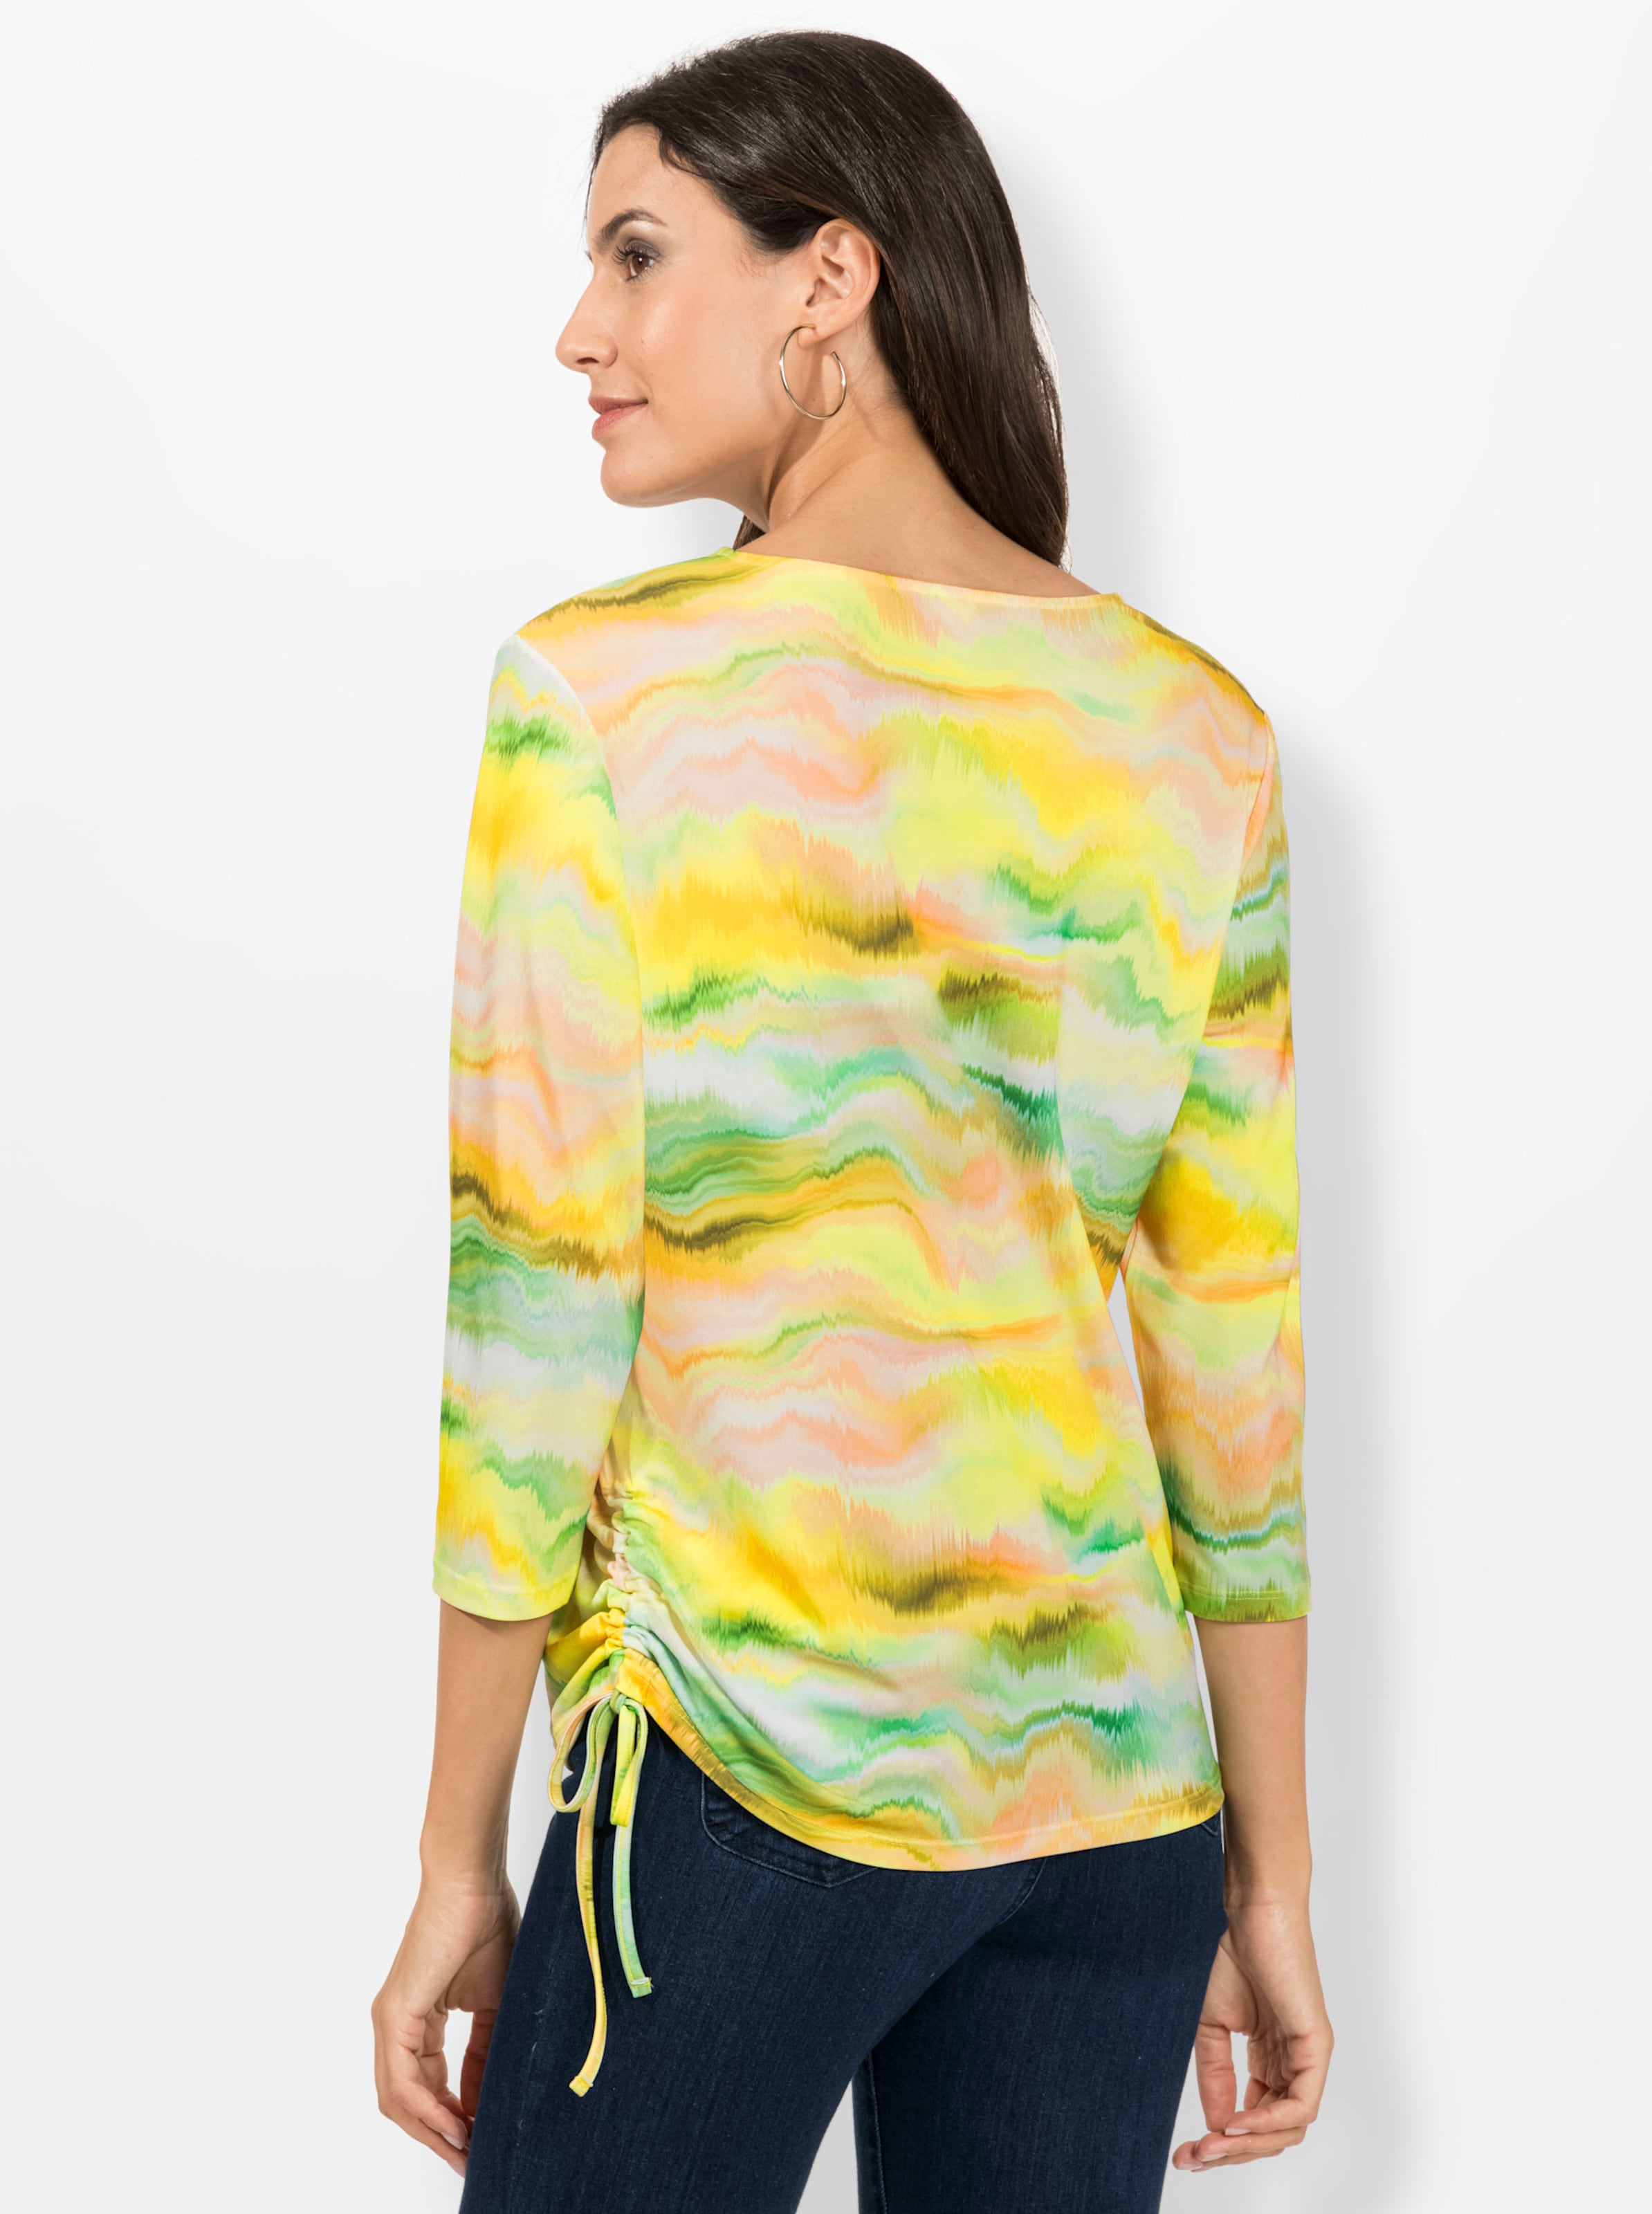 Rundhals Shirt günstig Kaufen-Shirt in limone-puder-bedruckt von heine. Shirt in limone-puder-bedruckt von heine <![CDATA[Ein Shirt mit Wow-Effekt: Lassen auch Sie sich begeistern von dem fantasievollen Digital-Print in leuchtenden Farben! Mit Rundhals-Ausschnitt, 3/4-Ärmeln und dopp